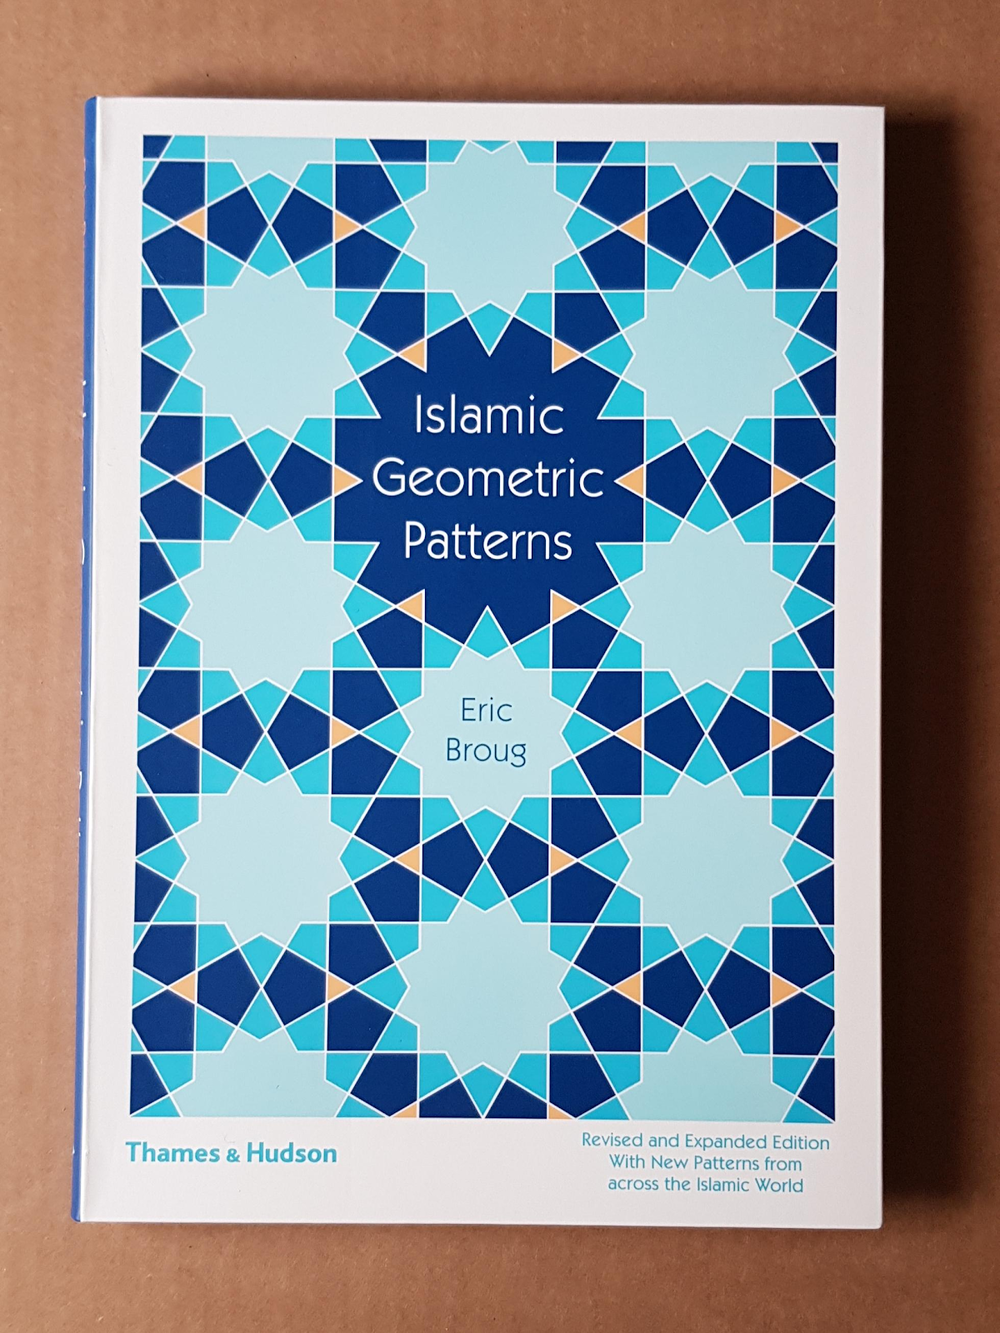 Eric Broug est un spécialiste de la conception islamique, comme on le voit sur la couverture de son livre.